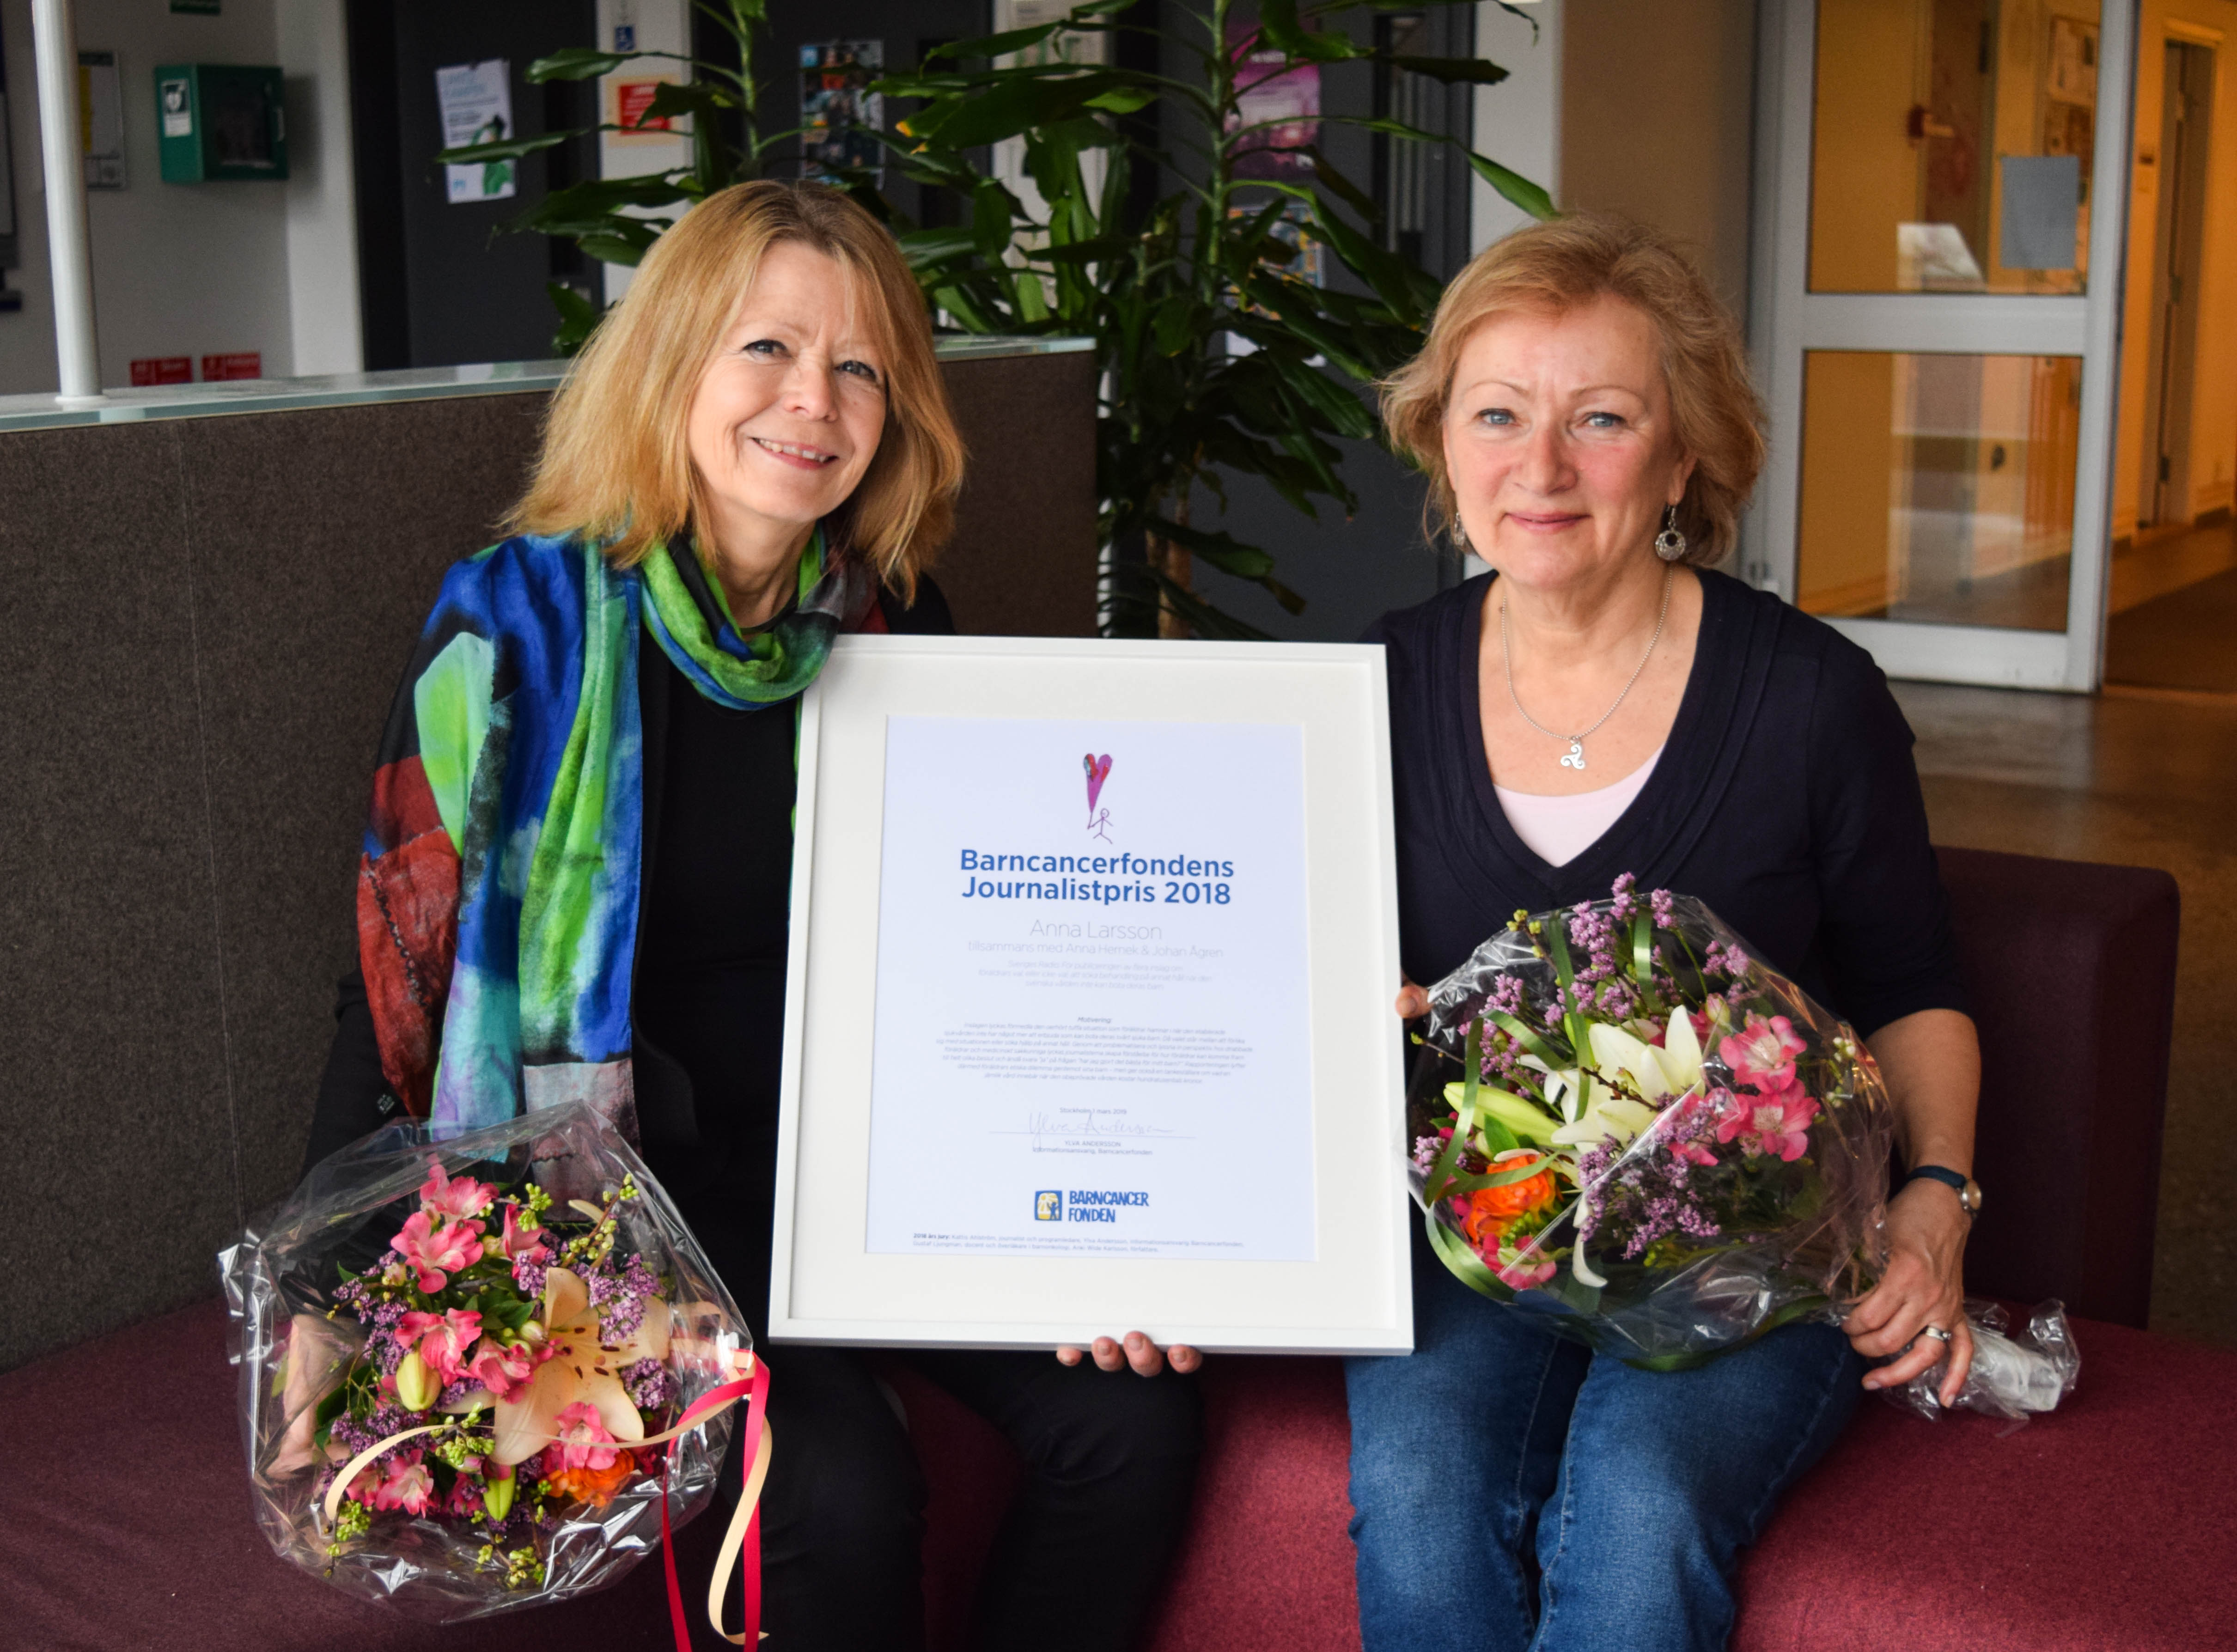 Barncancerfondens journalistpris gick i år till Anna Larsson (t v) tillsammans med Anna Hernek (t h) och Johan Ågren (inte med på bild),  på Sveriges radio.